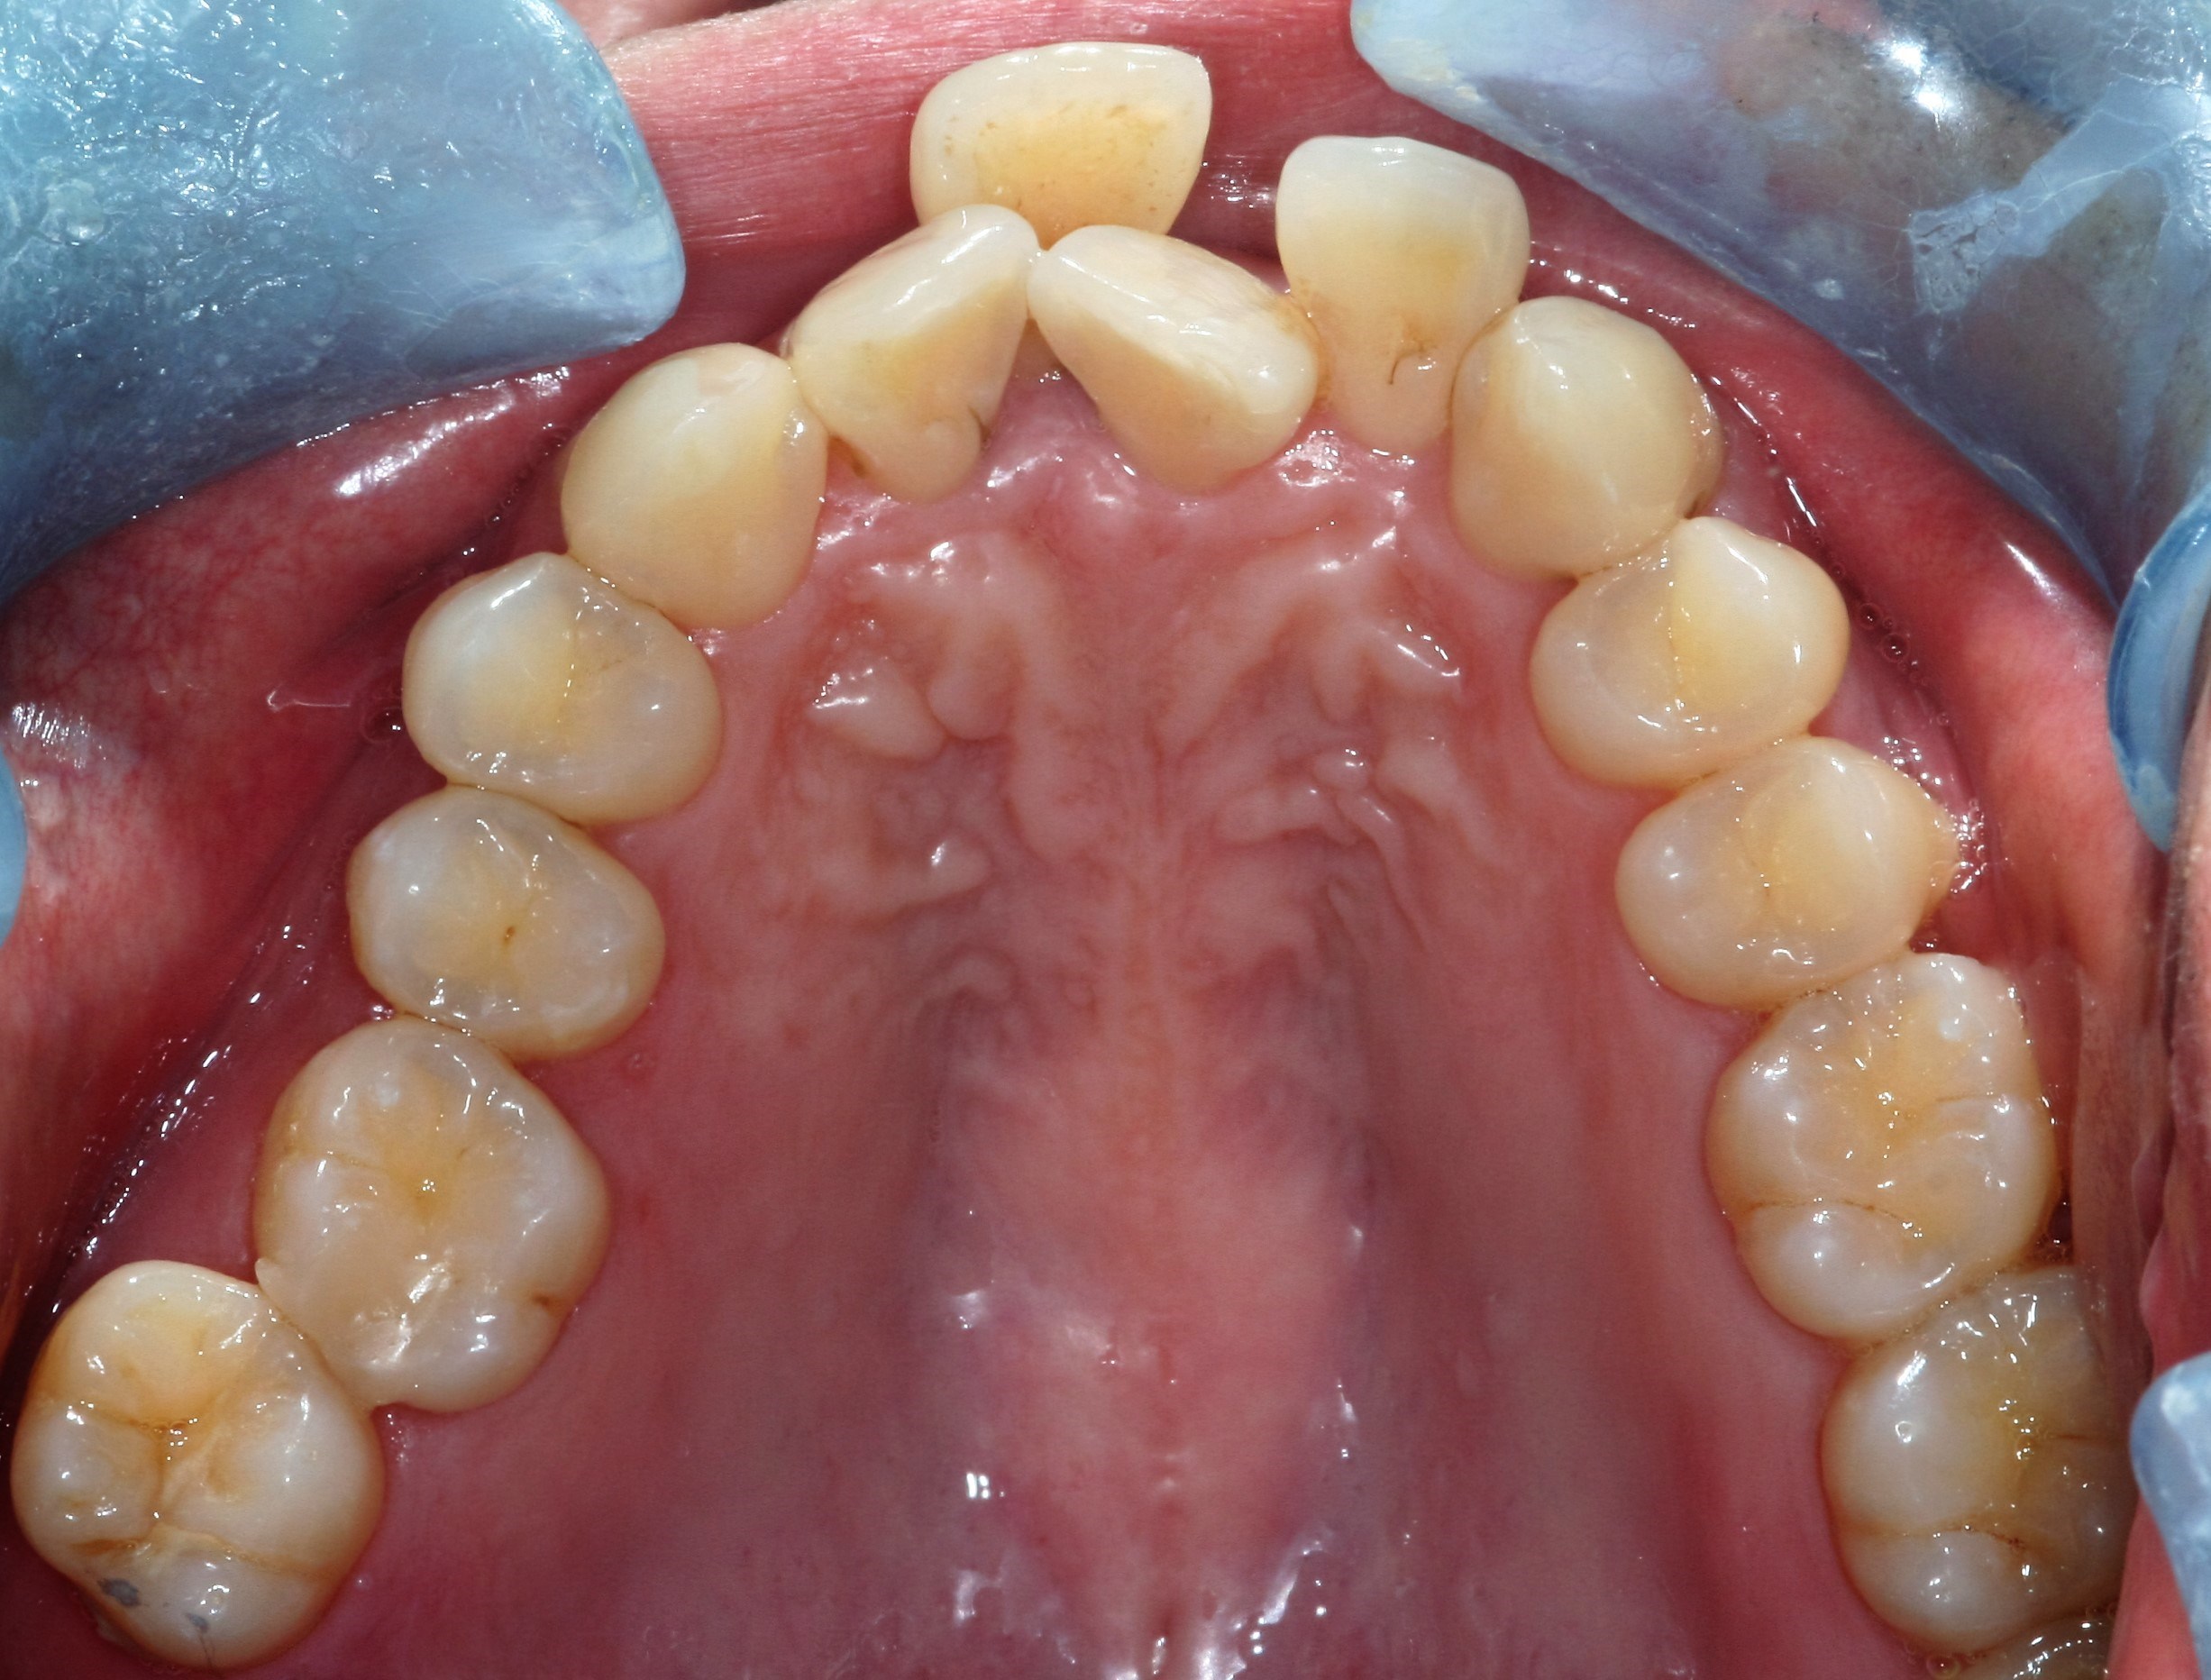 Underdeveloped-dental-arch